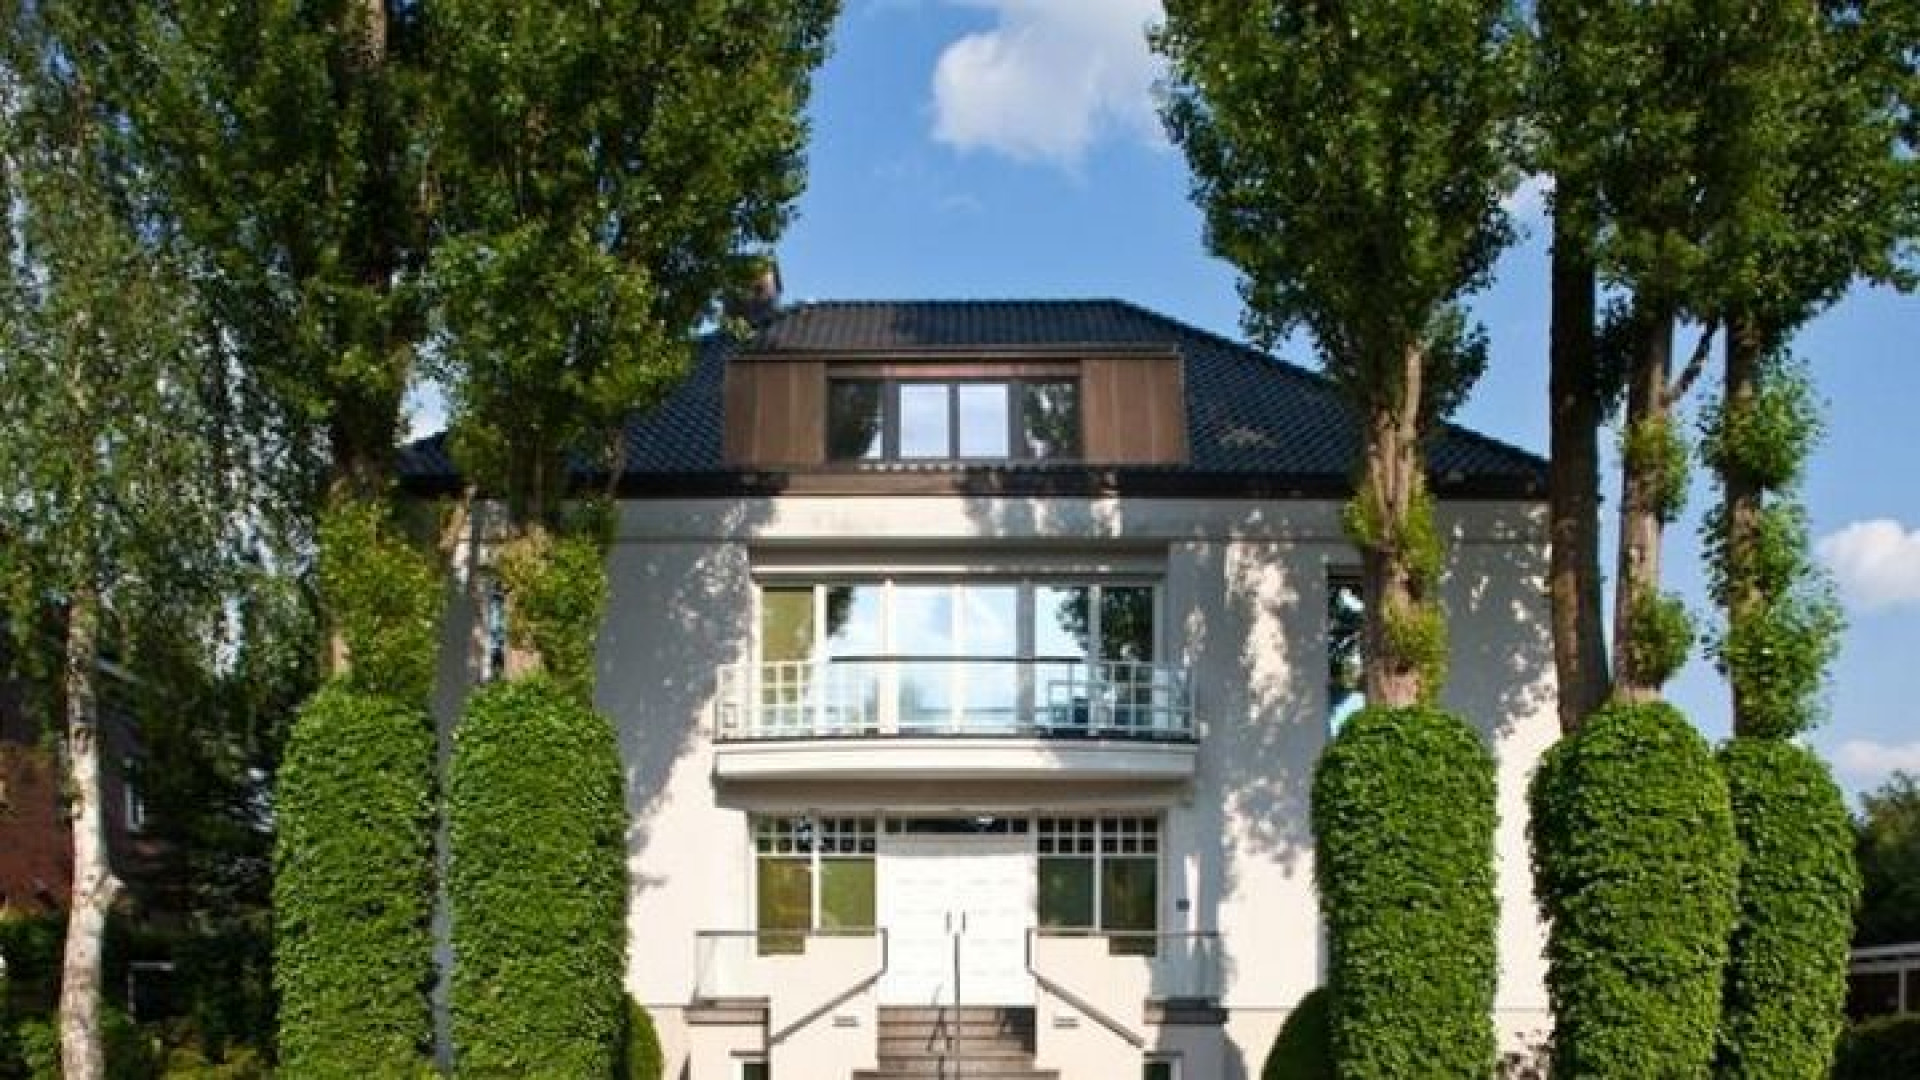 Sabia woont nog altijd in luxe villa aan de Alster in Hamburg. Zie foto's